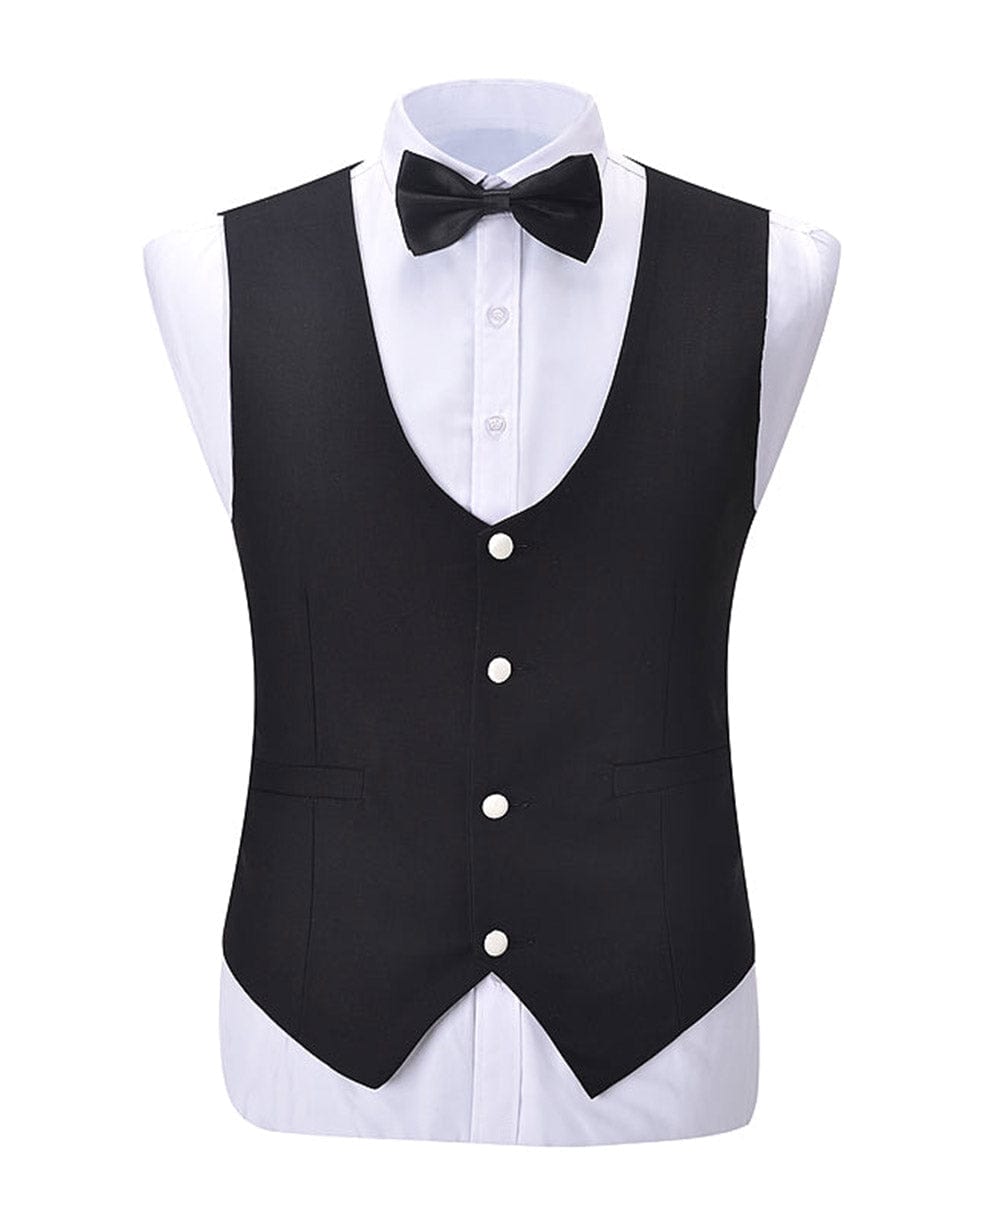 aesido Formal Men's Suit Vest Flat U Neck Waistcoat